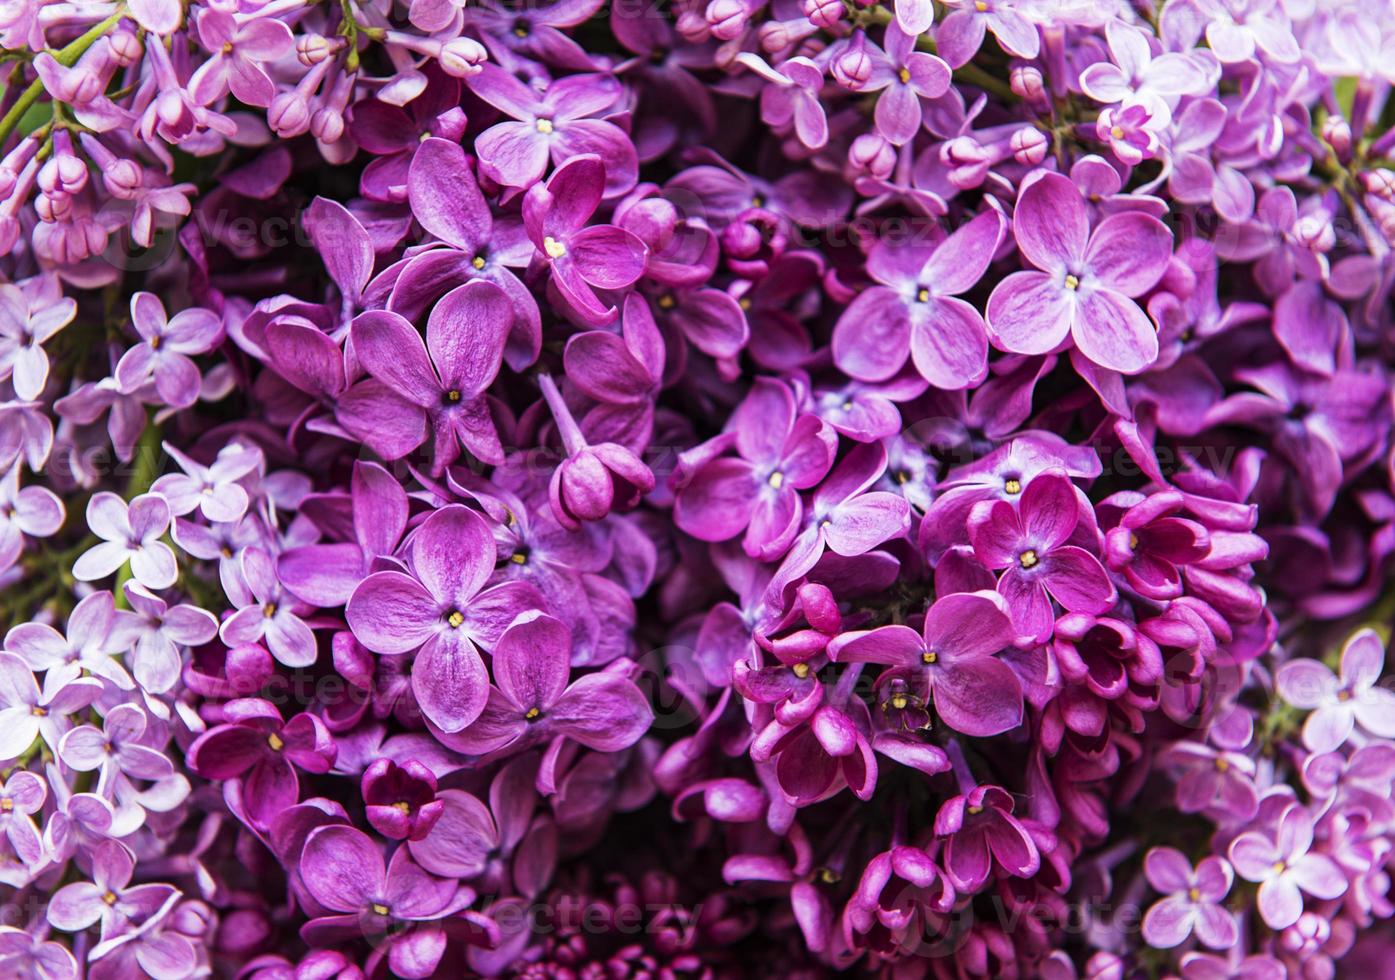 sfondo naturale di fiori lilla foto